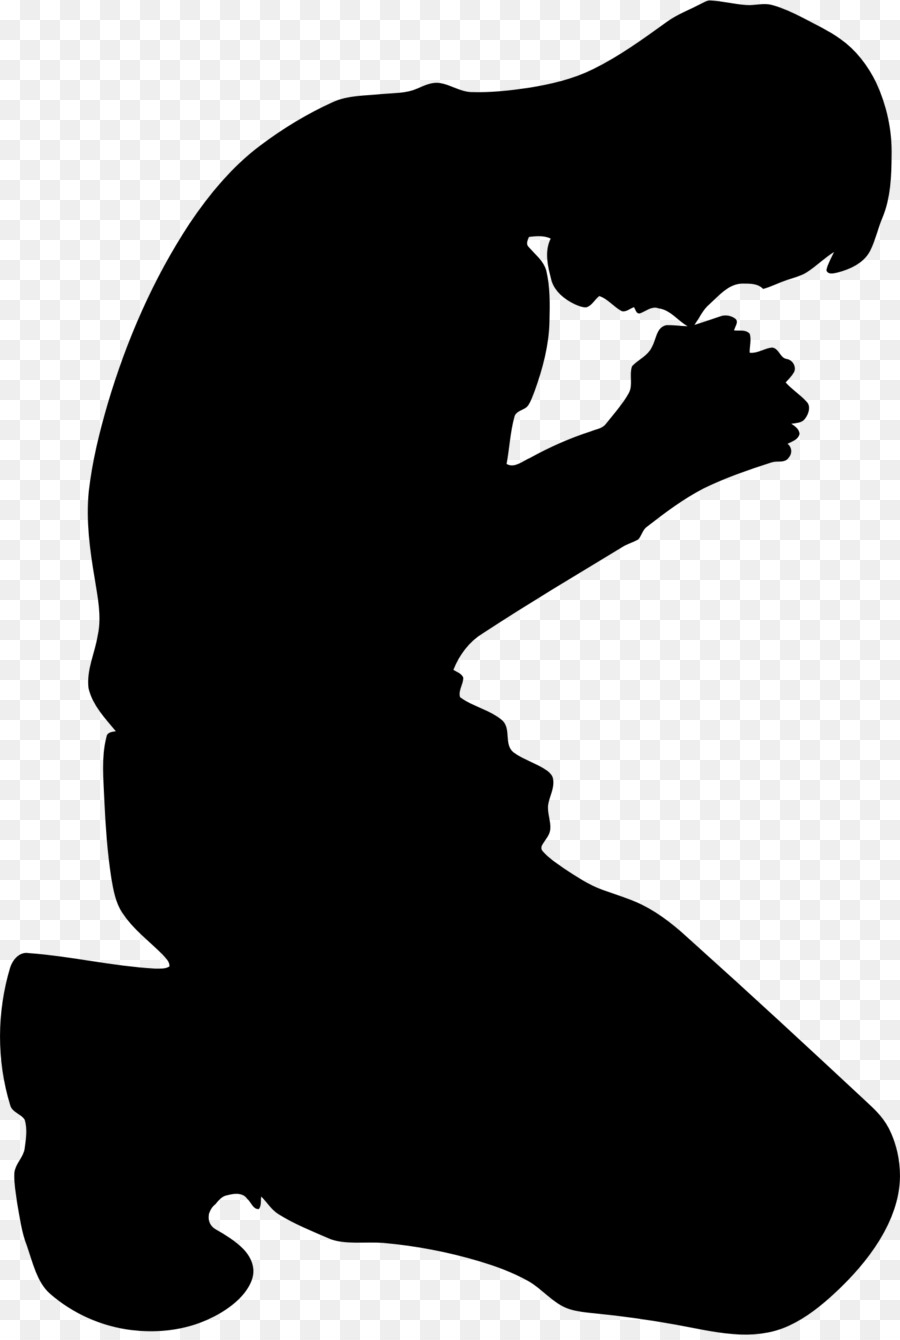 Prayer Religion Kneeling God Clip art - God png download - 1560*2314 - Free Transparent Prayer png Download.